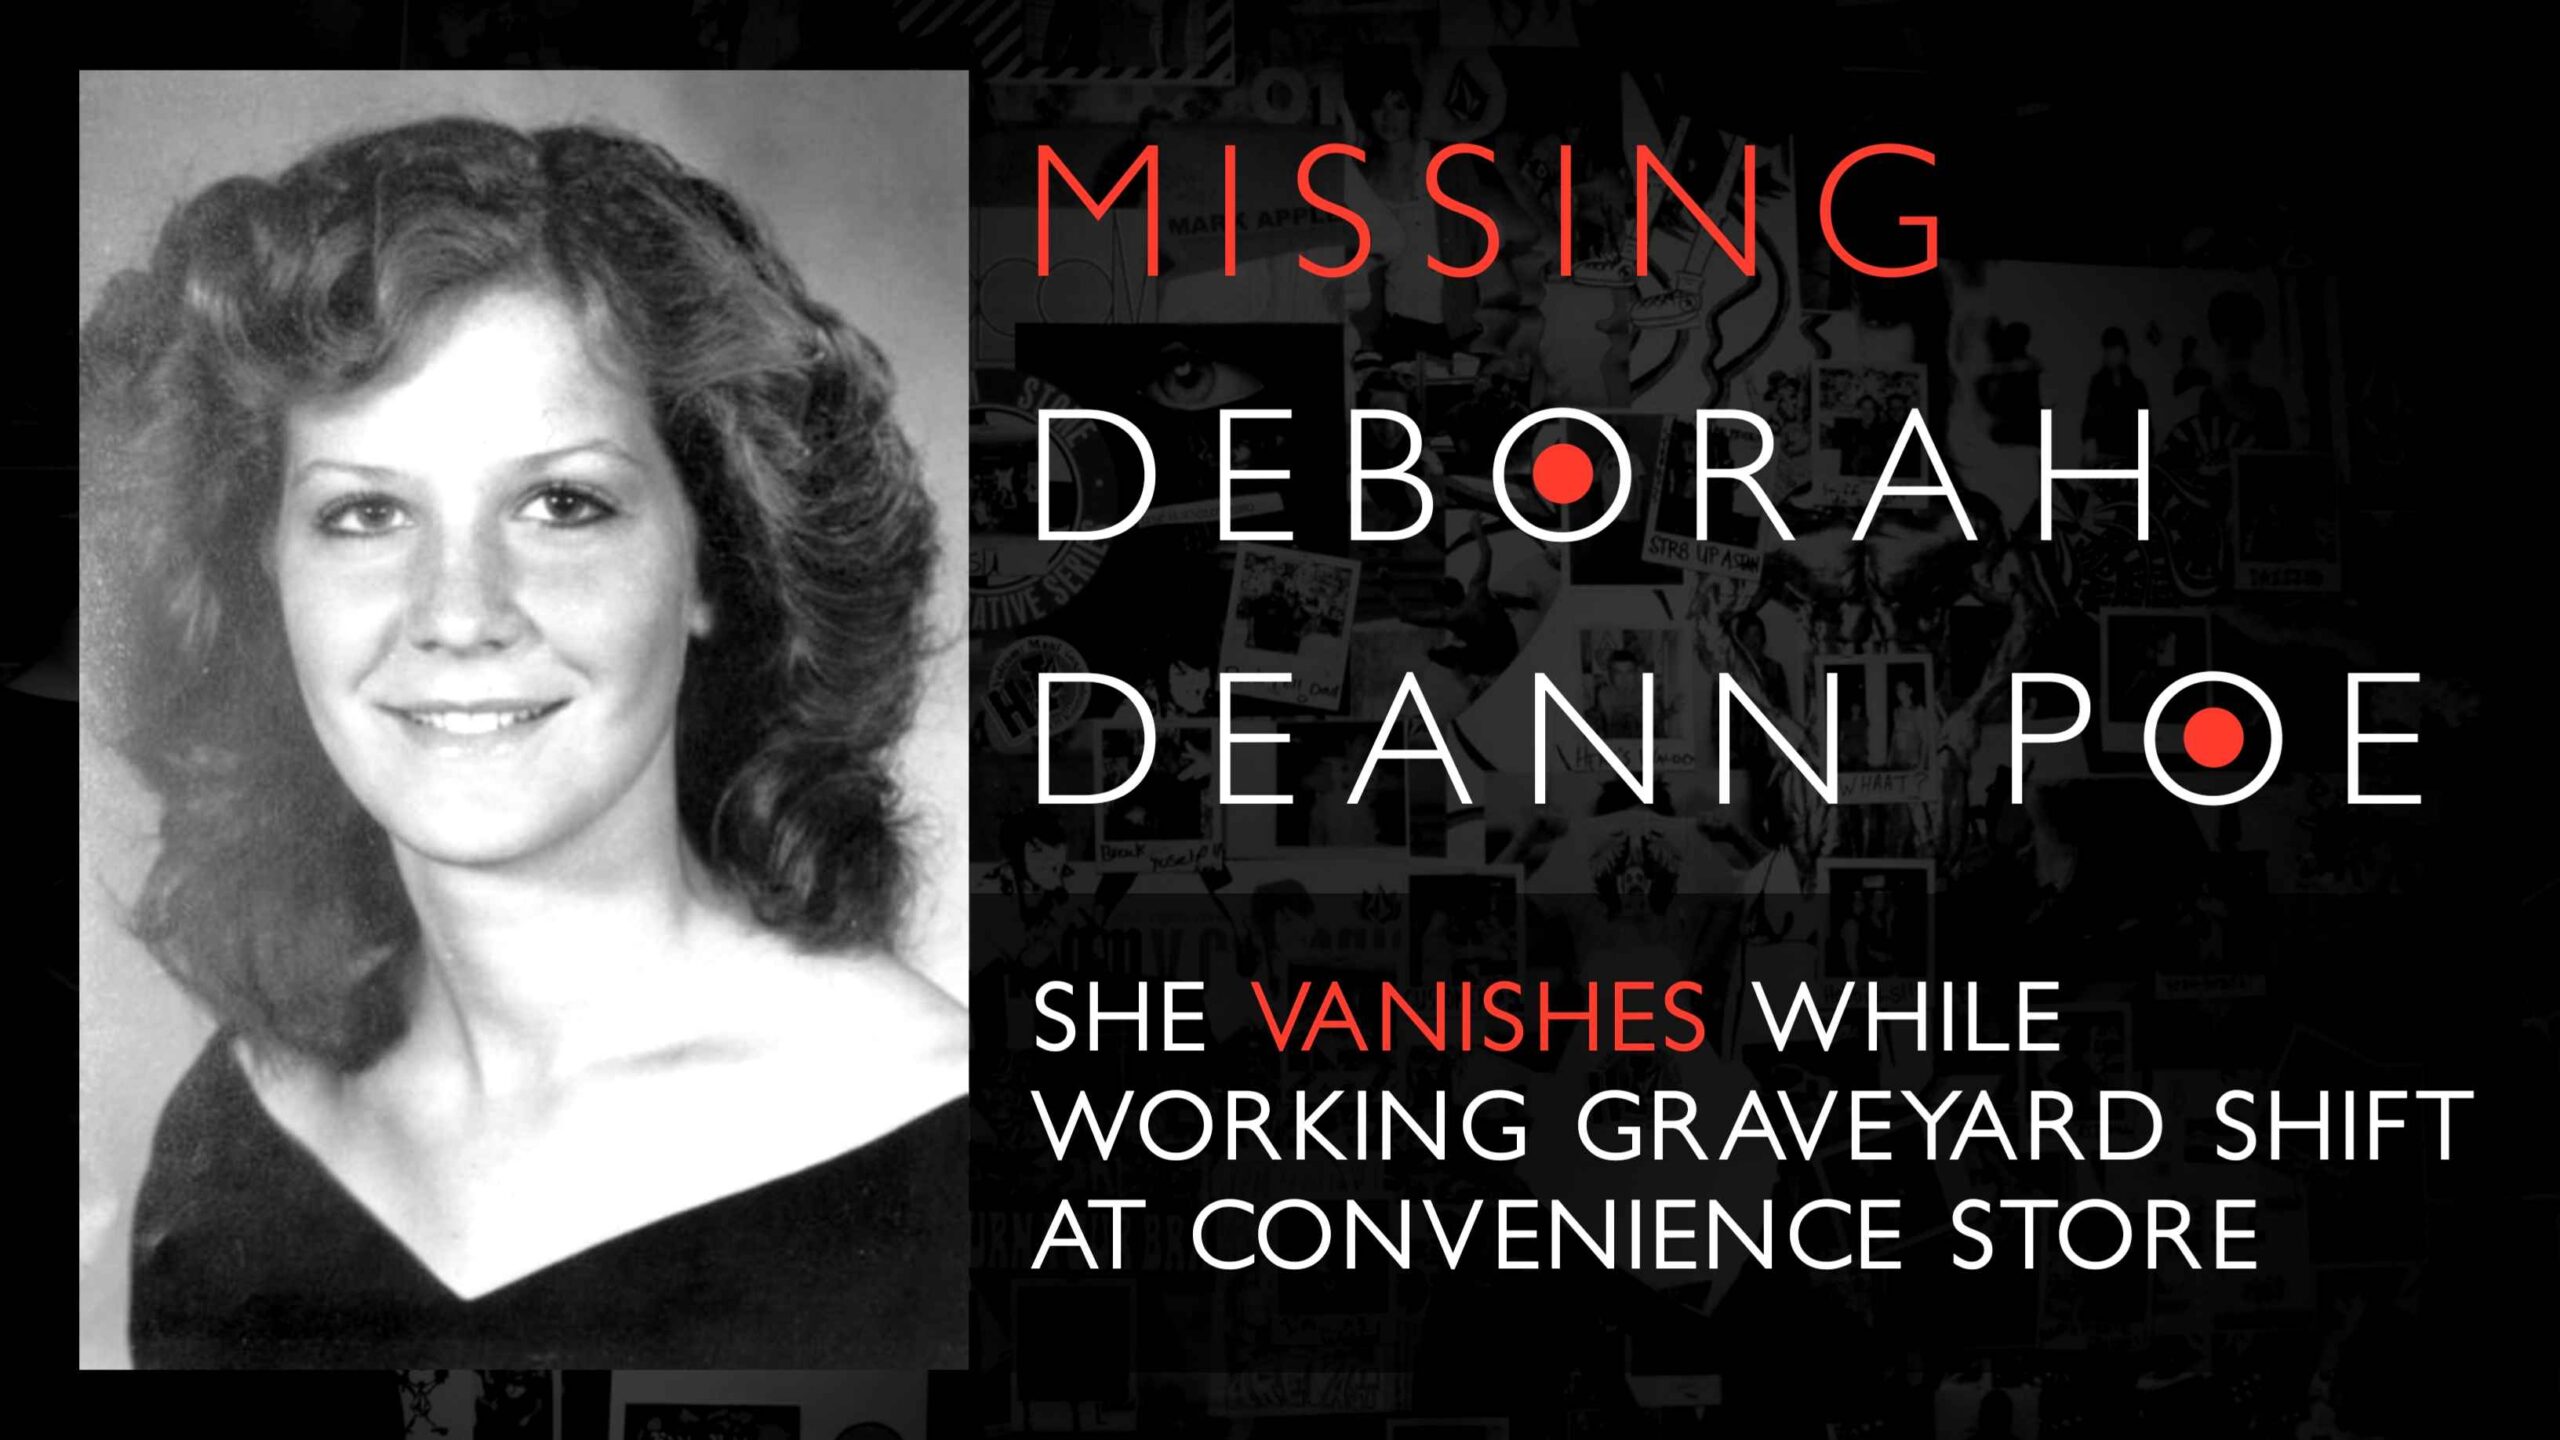 Kehilangan Deborah Poe 1 yang belum dapat diselesaikan